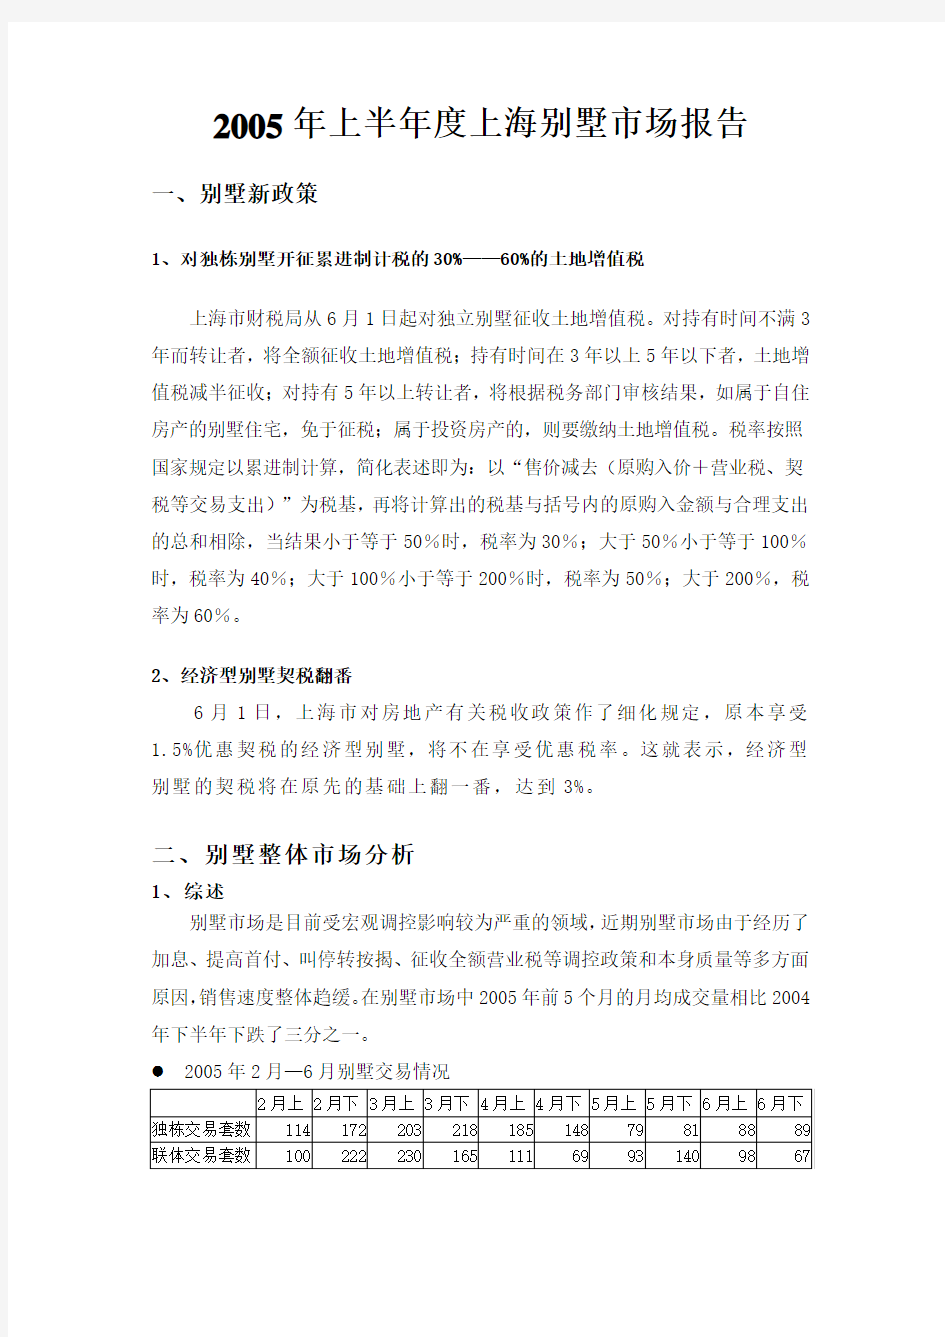 某上半年度上海别墅市场报告